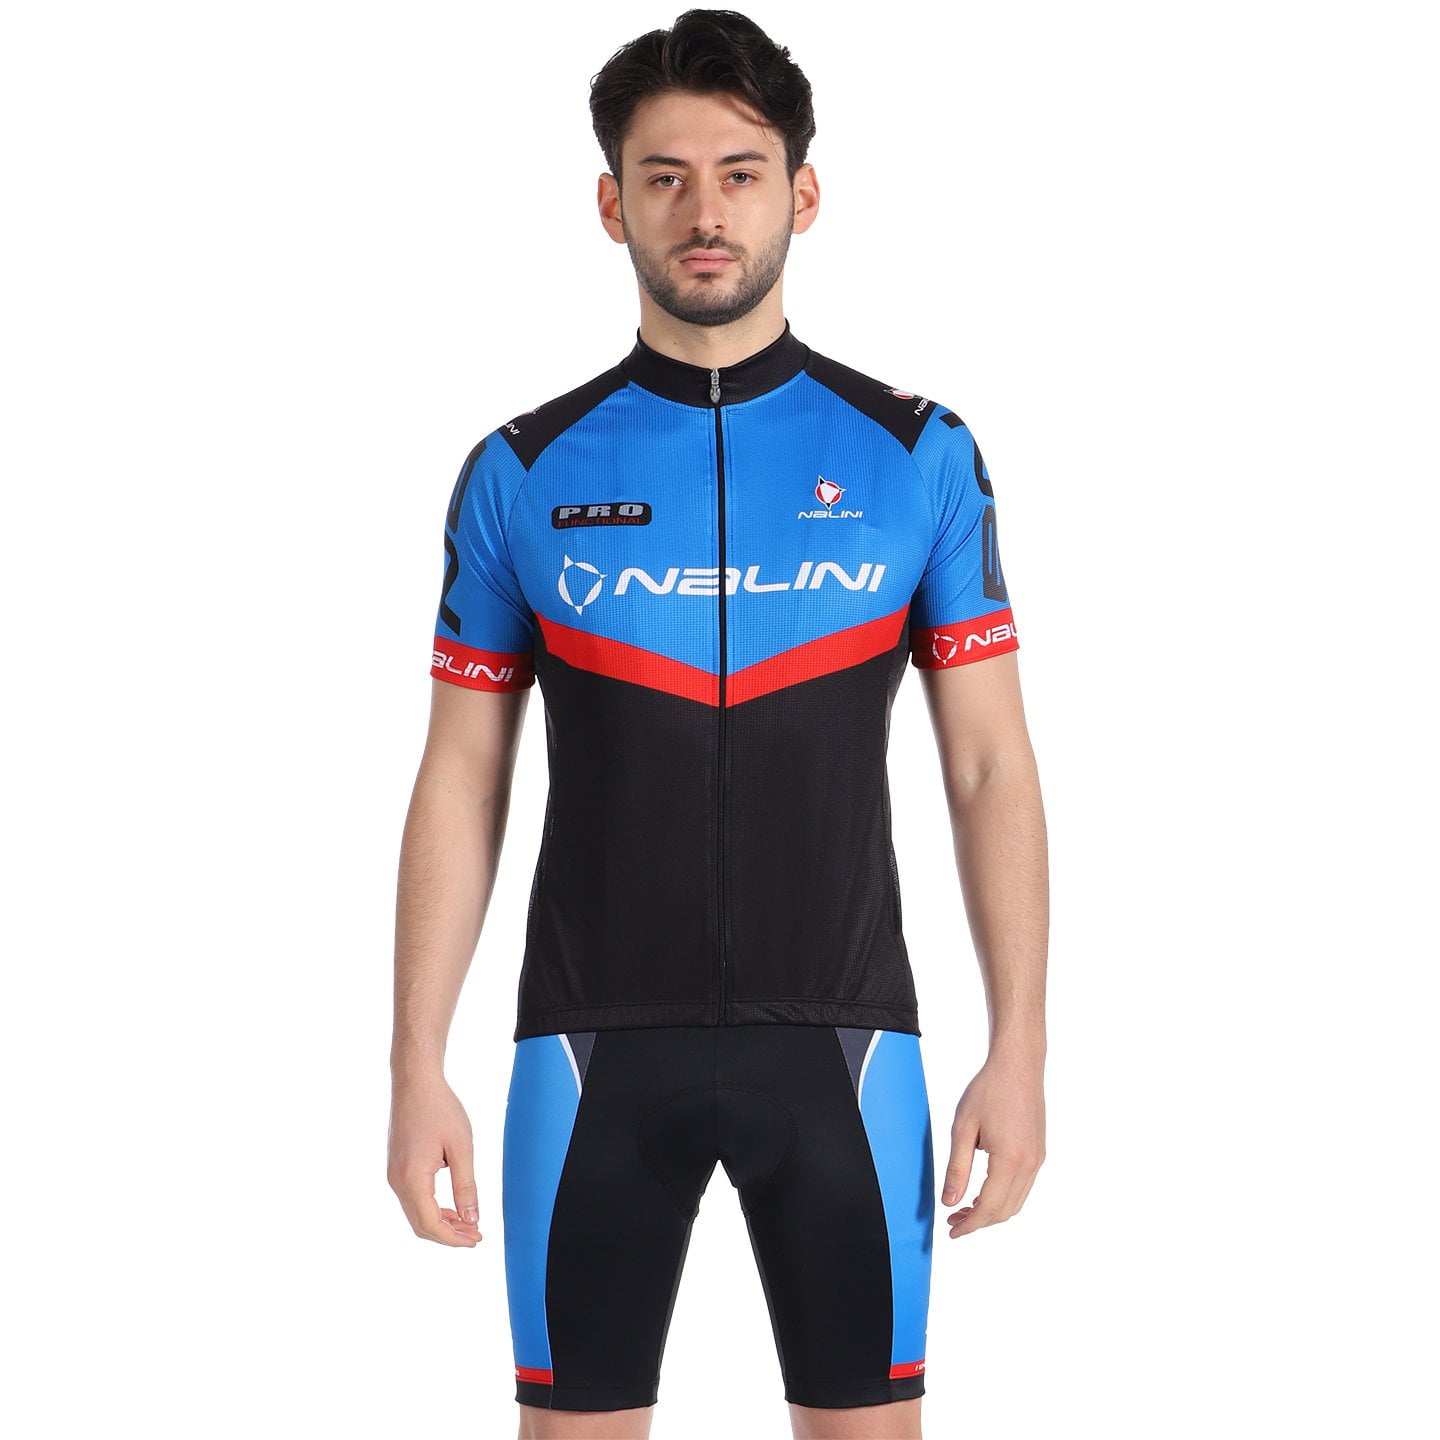 NALINI Riegel 2 Set (cycling jersey + cycling shorts), for men